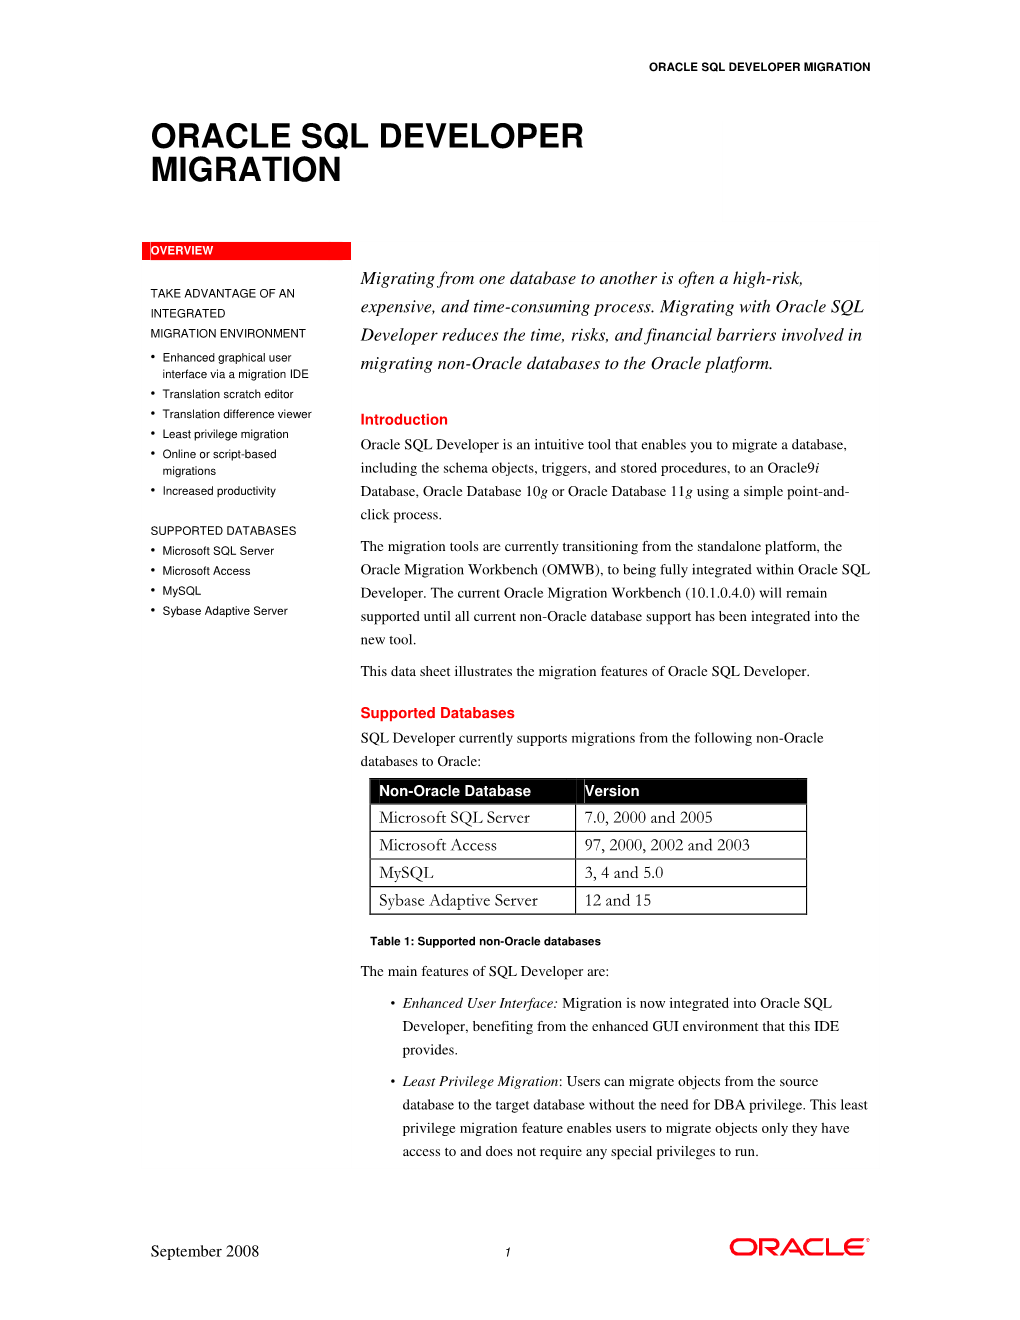 Oracle Sql Developer Migration